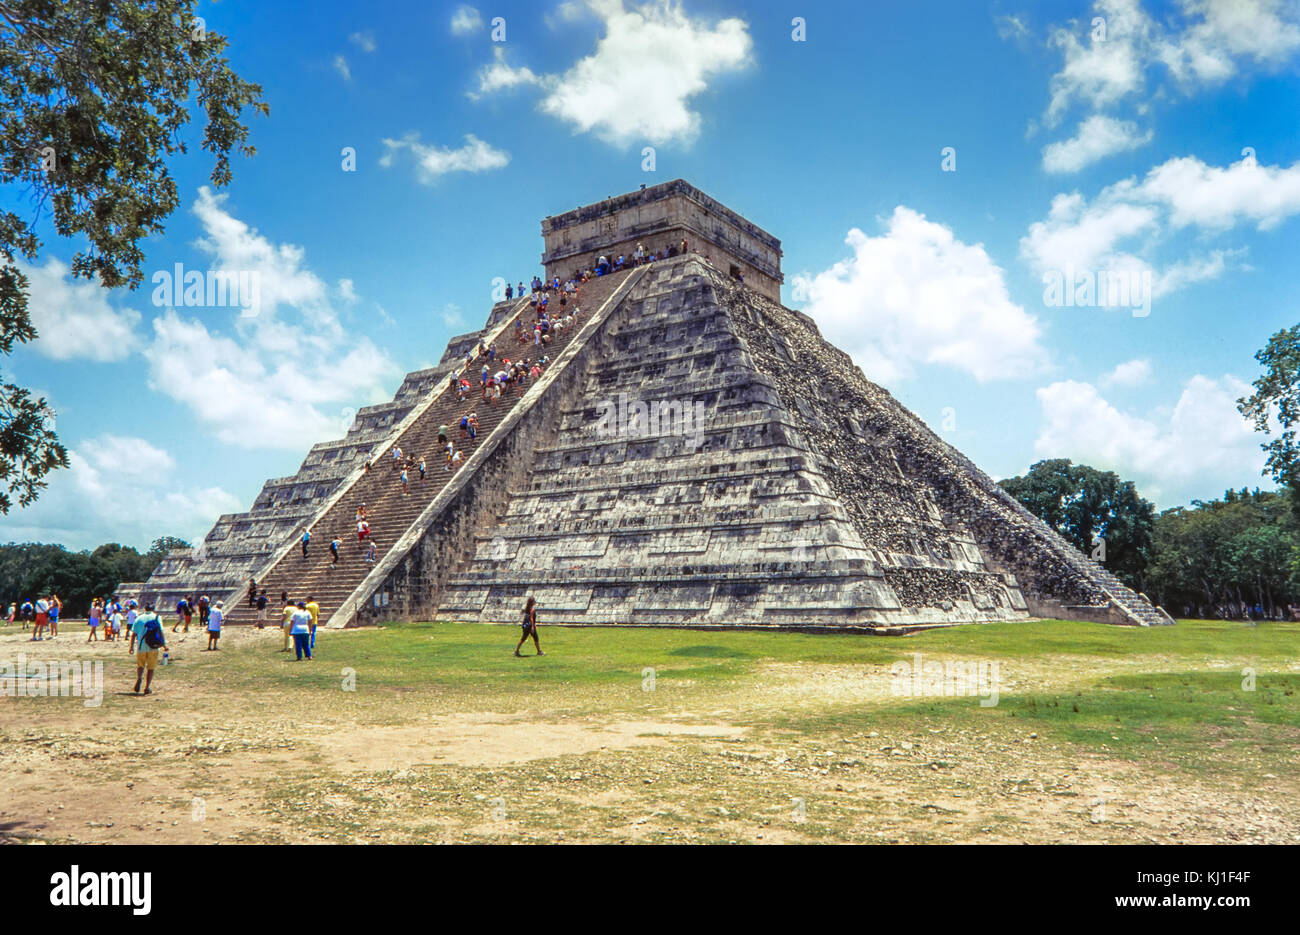 Temple de kukulkan, pyramide de Chichen Itza, Yucatan, Mexique Banque D'Images